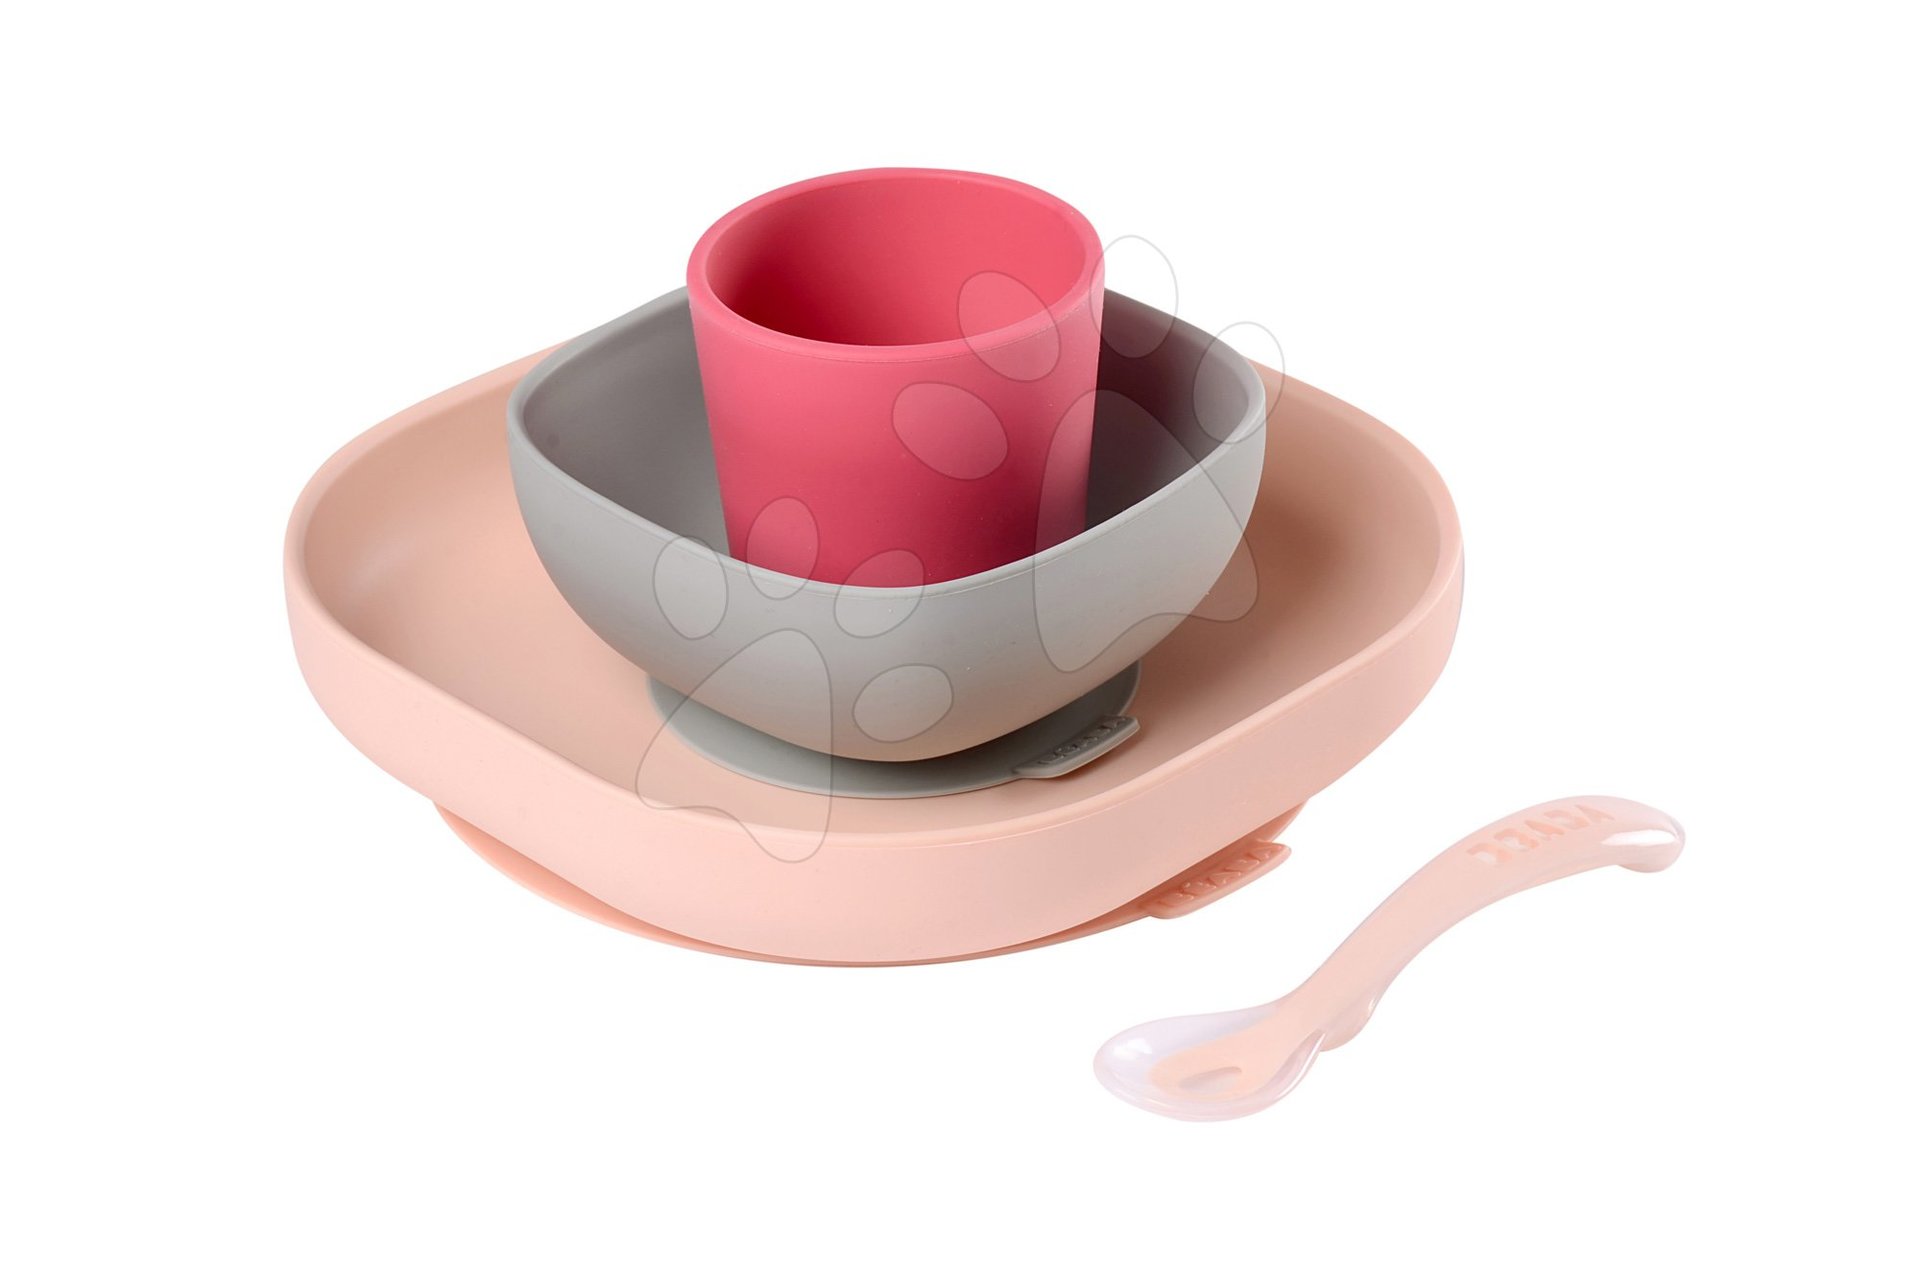 Babaétkészletek - Étkészlet Silicone Meal set Beaba szilikonból 4 részes rózsaszín csecsemőknek